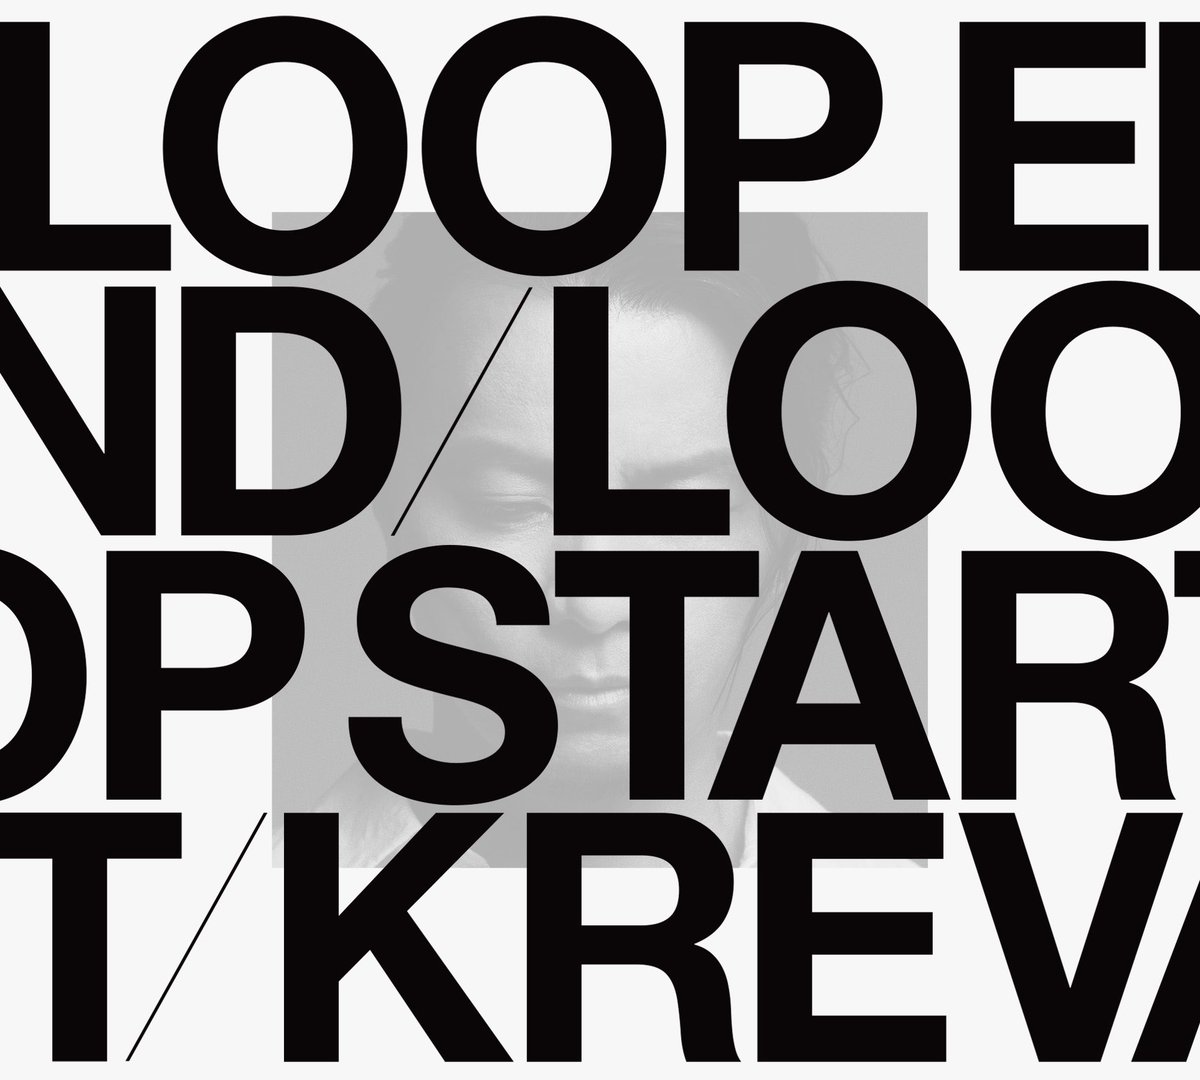 『KREVA - LOOP END / LOOP START』収録の『LOOP END / LOOP START (Deluxe Edition)』ジャケット